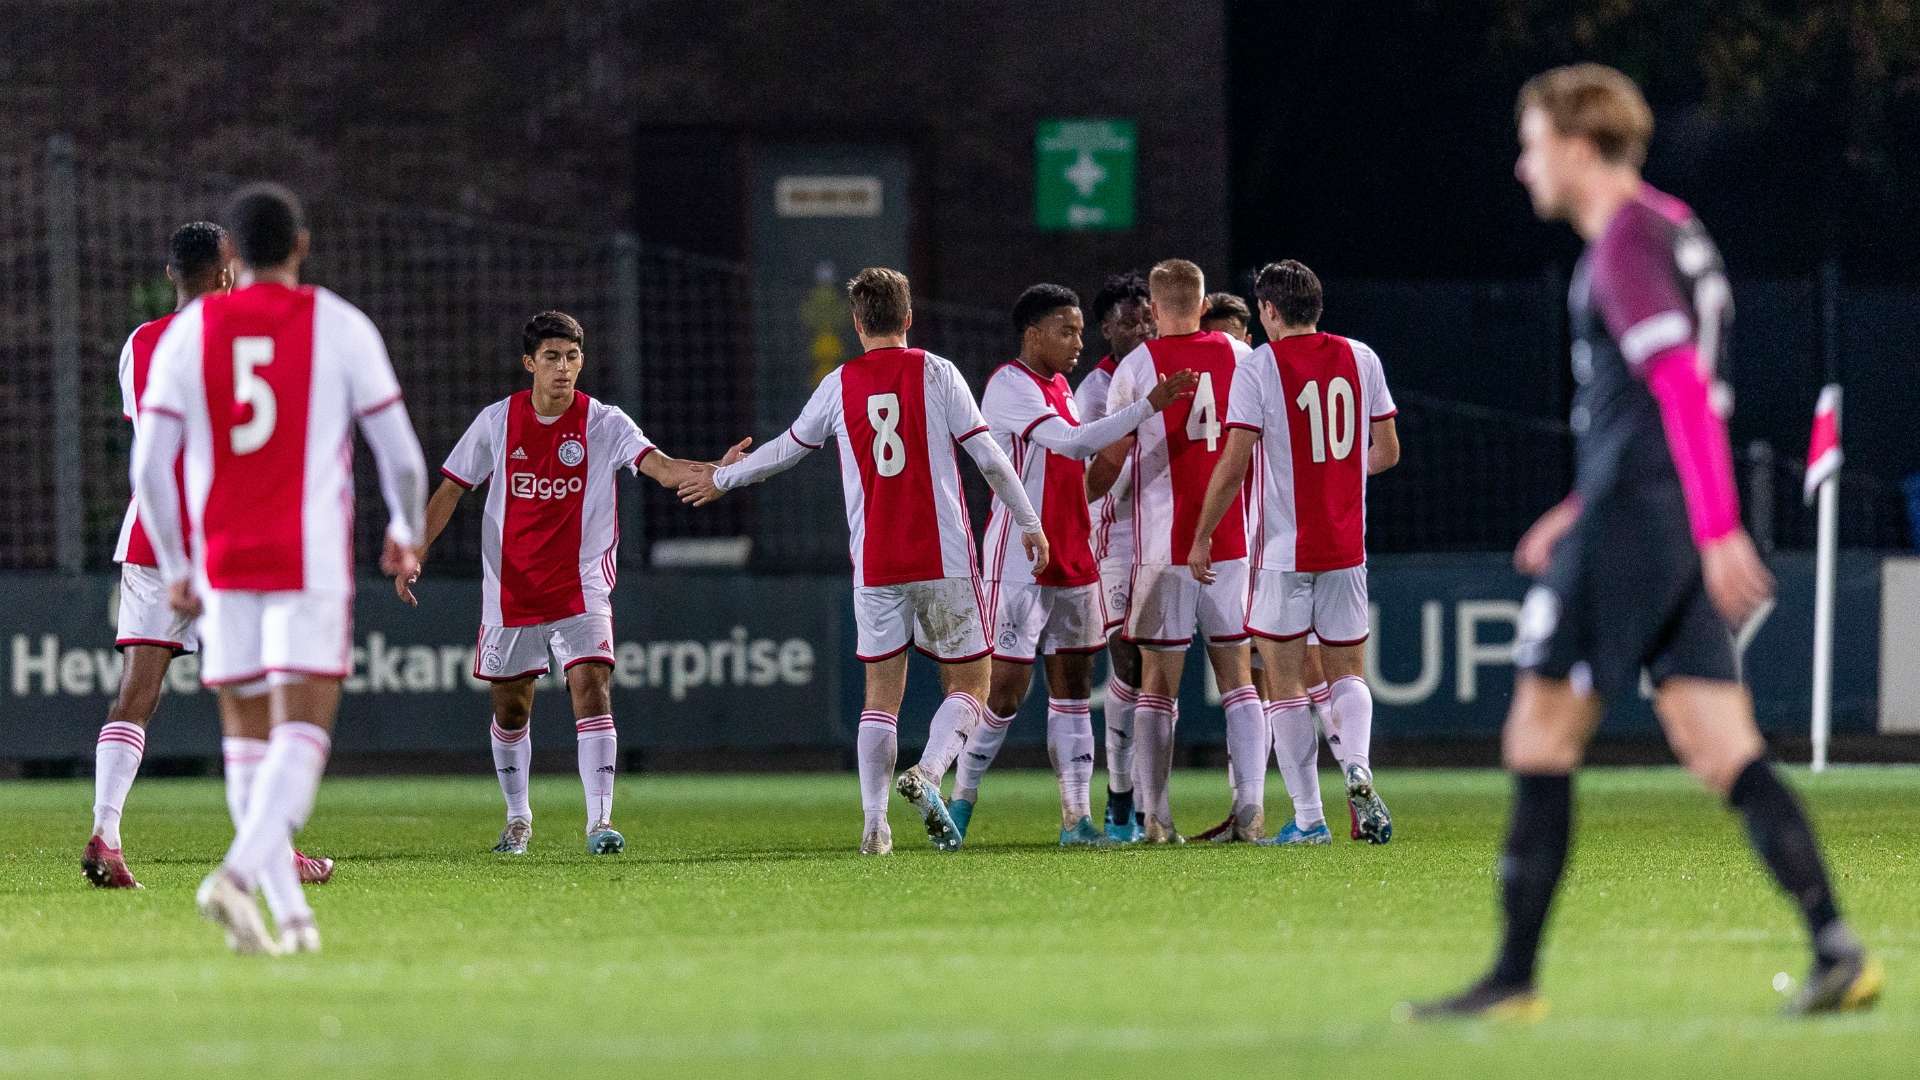 Jong Ajax - Jong FC Utrecht, 10212019